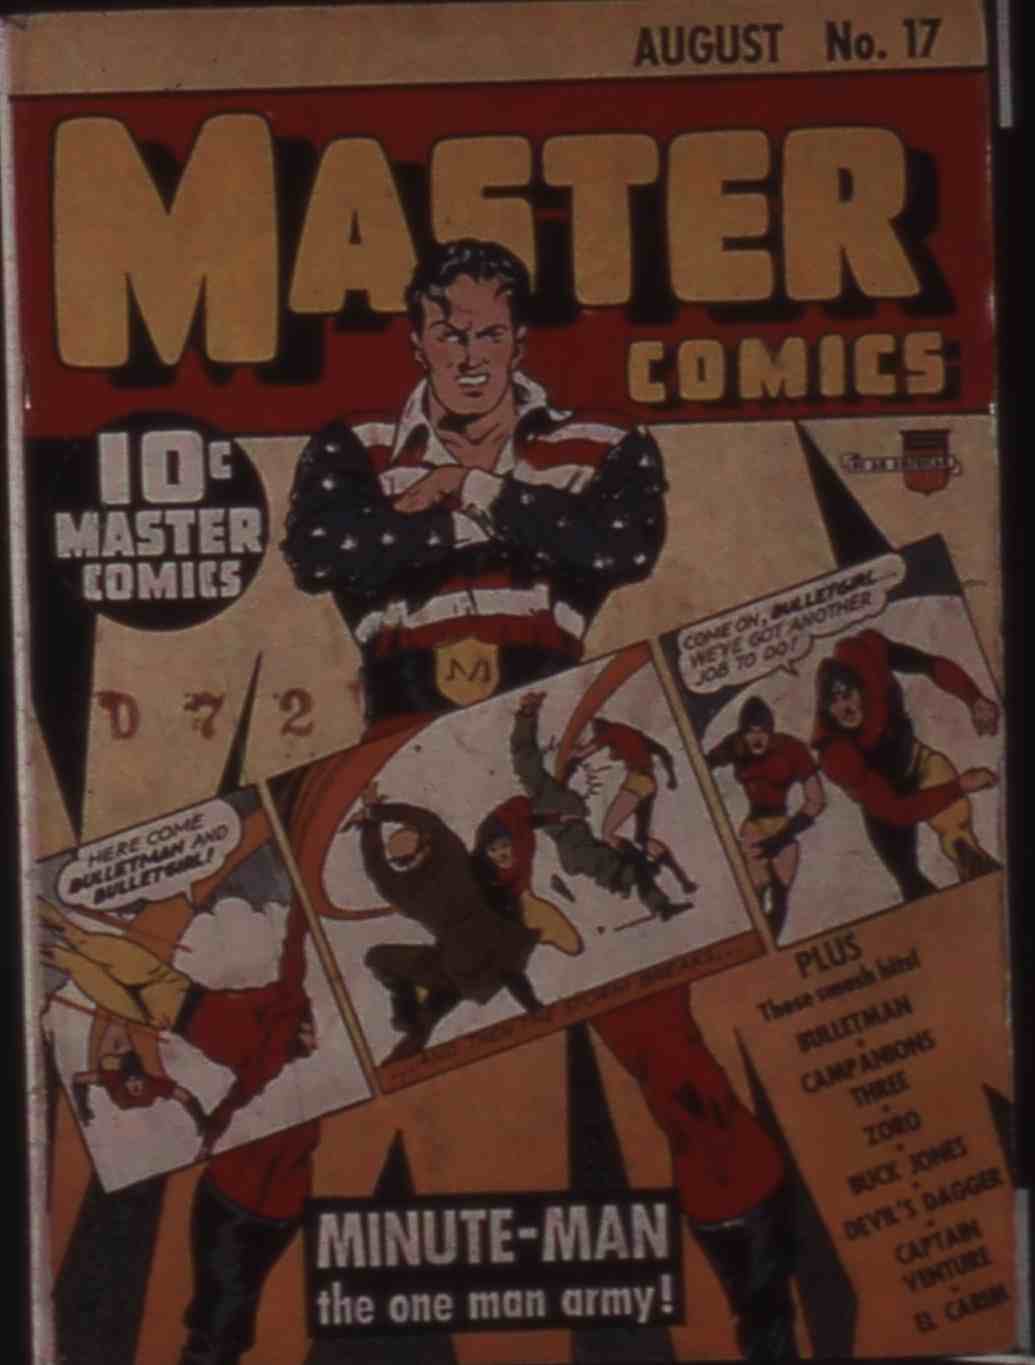 Book Cover For Buck Jones (Fawcett Master Comics) vol 2